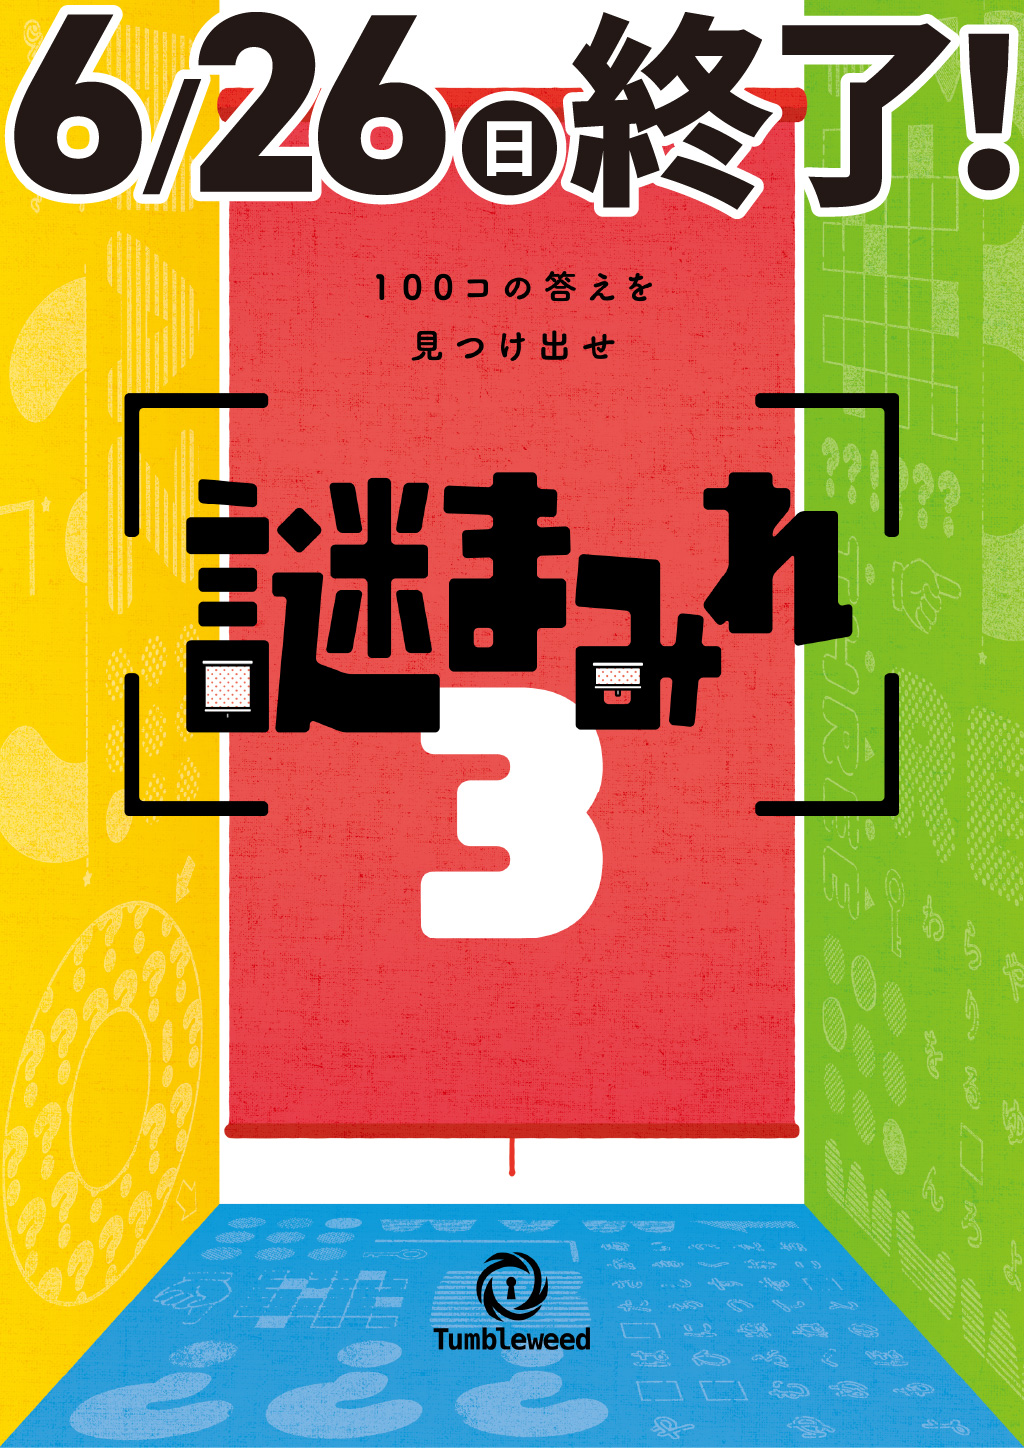 タンブルウィード『謎まみれ3』【6月分】【体験型謎解きゲーム】